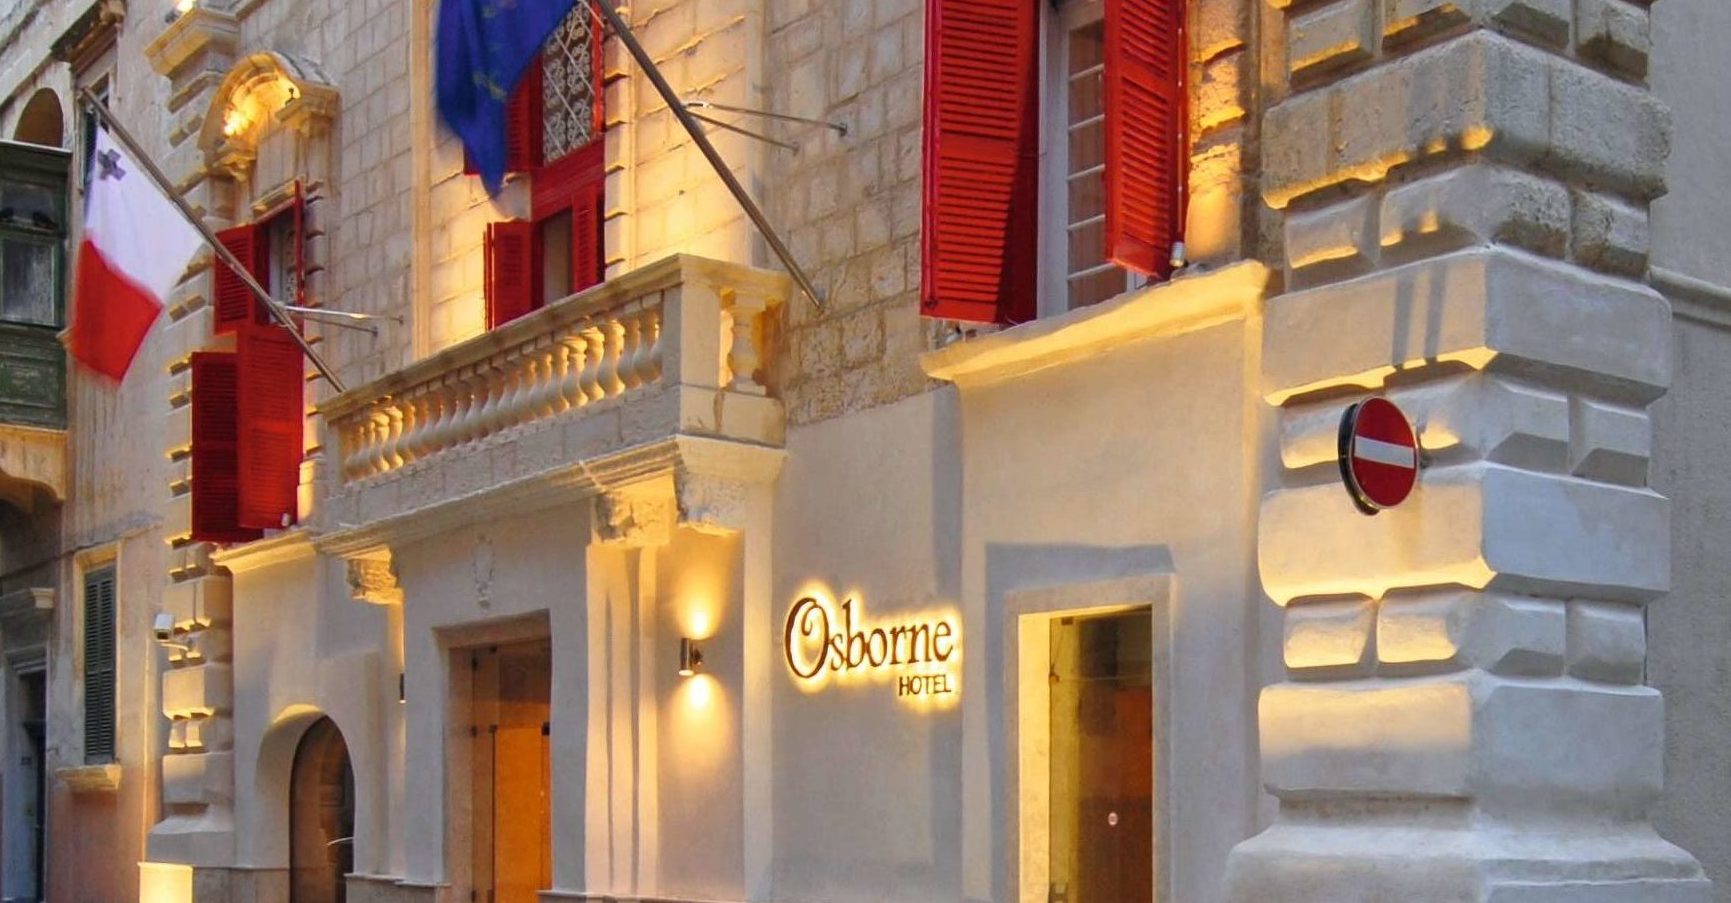 Osborne Hotel, Valletta, Malta